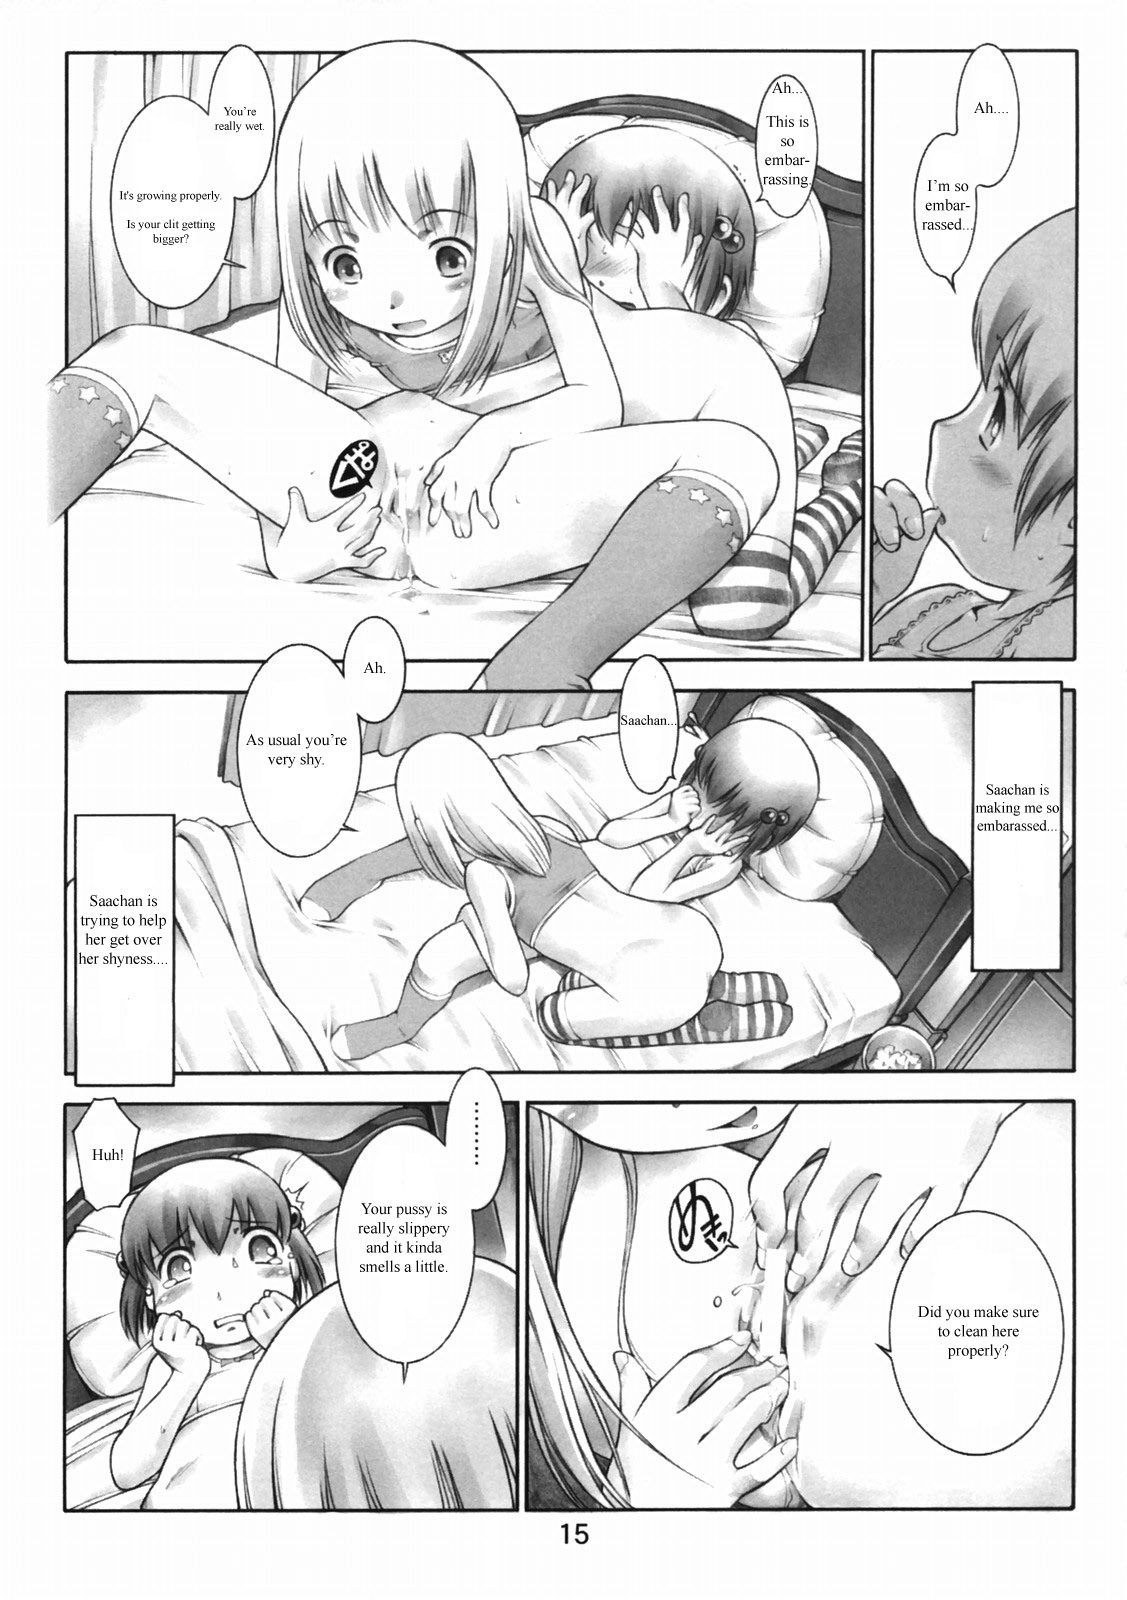 Oshiri Kizzu 12 original 13 hentai manga